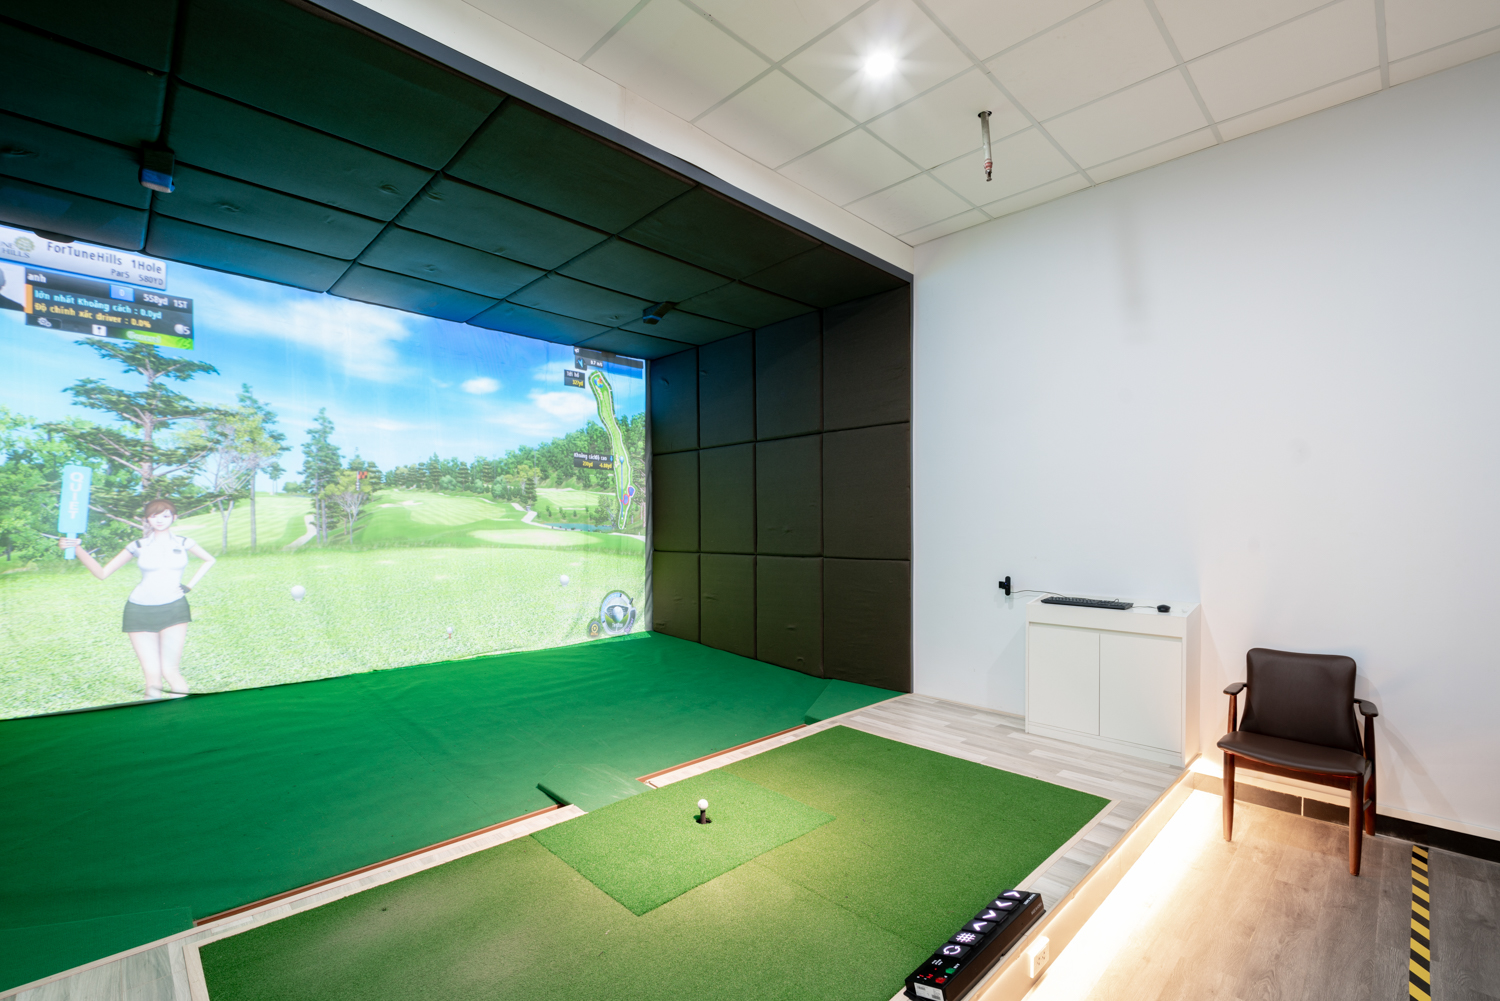 Hình ảnh Golf trong nhà - Golf Indoor - Golf 3D